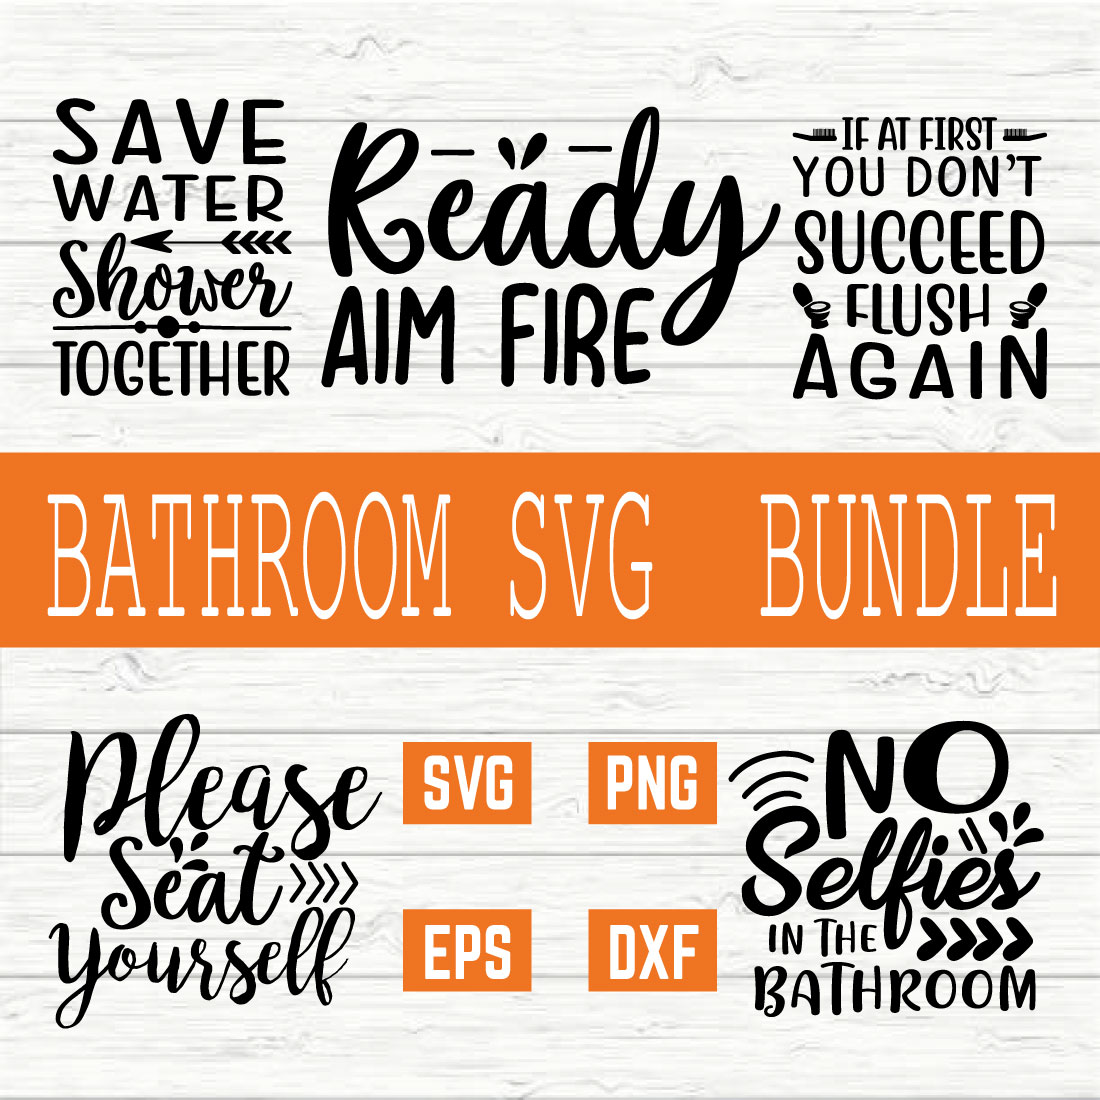 Bathroom Typography Bundle vol 3 cover image.